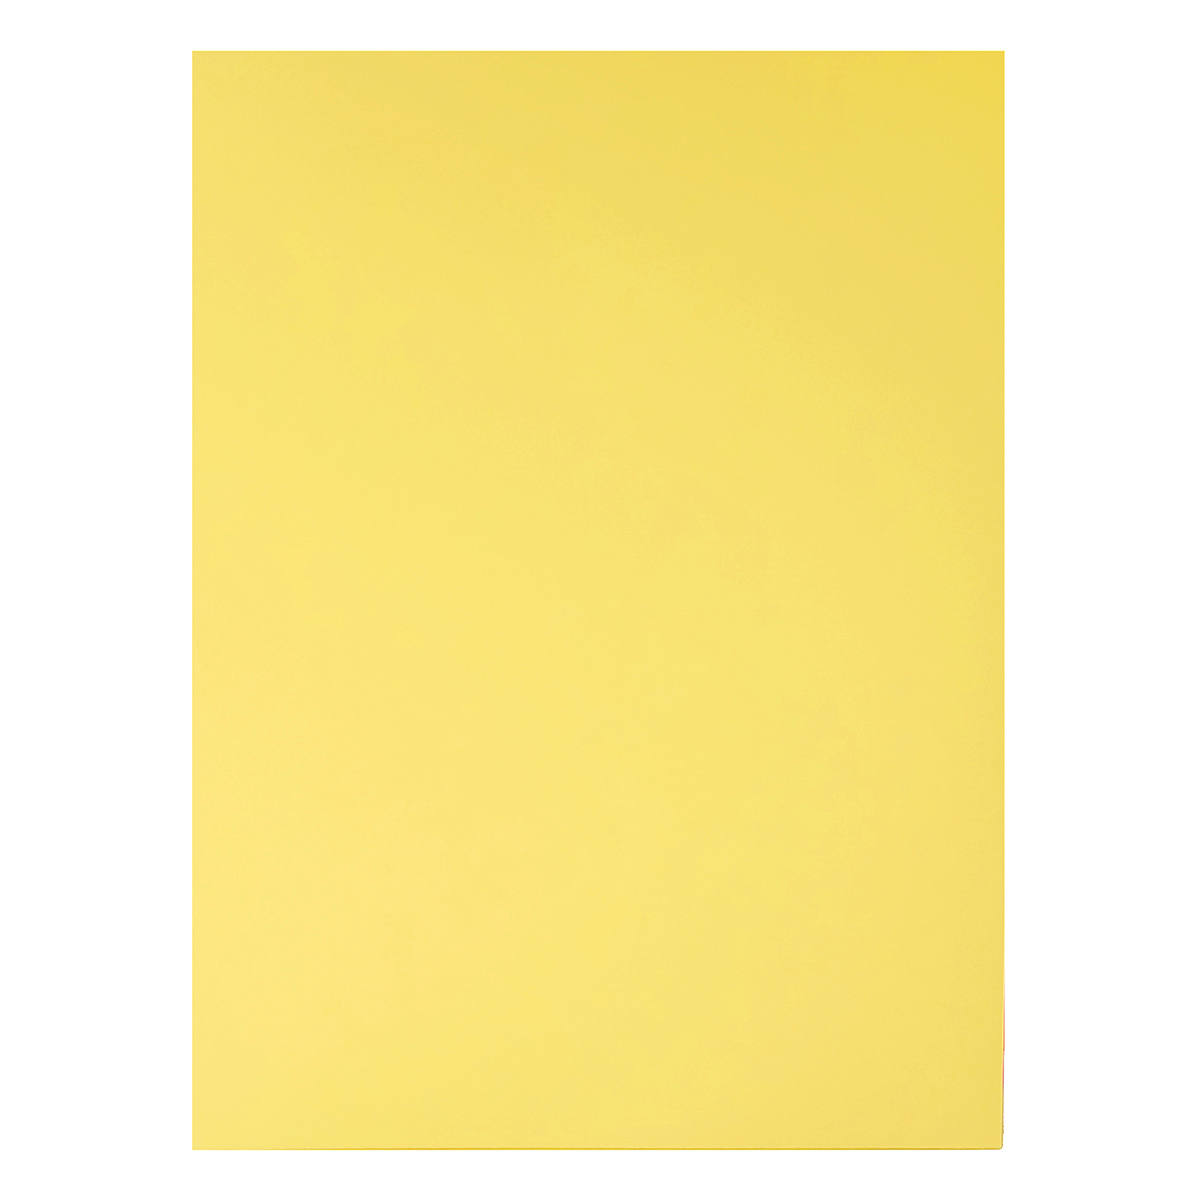 Papel Amarelo Diplomata Opaline Offset Liso 180g A4 Massa Colorida Tipo Ofício 60kg Pacote com 50 folhas